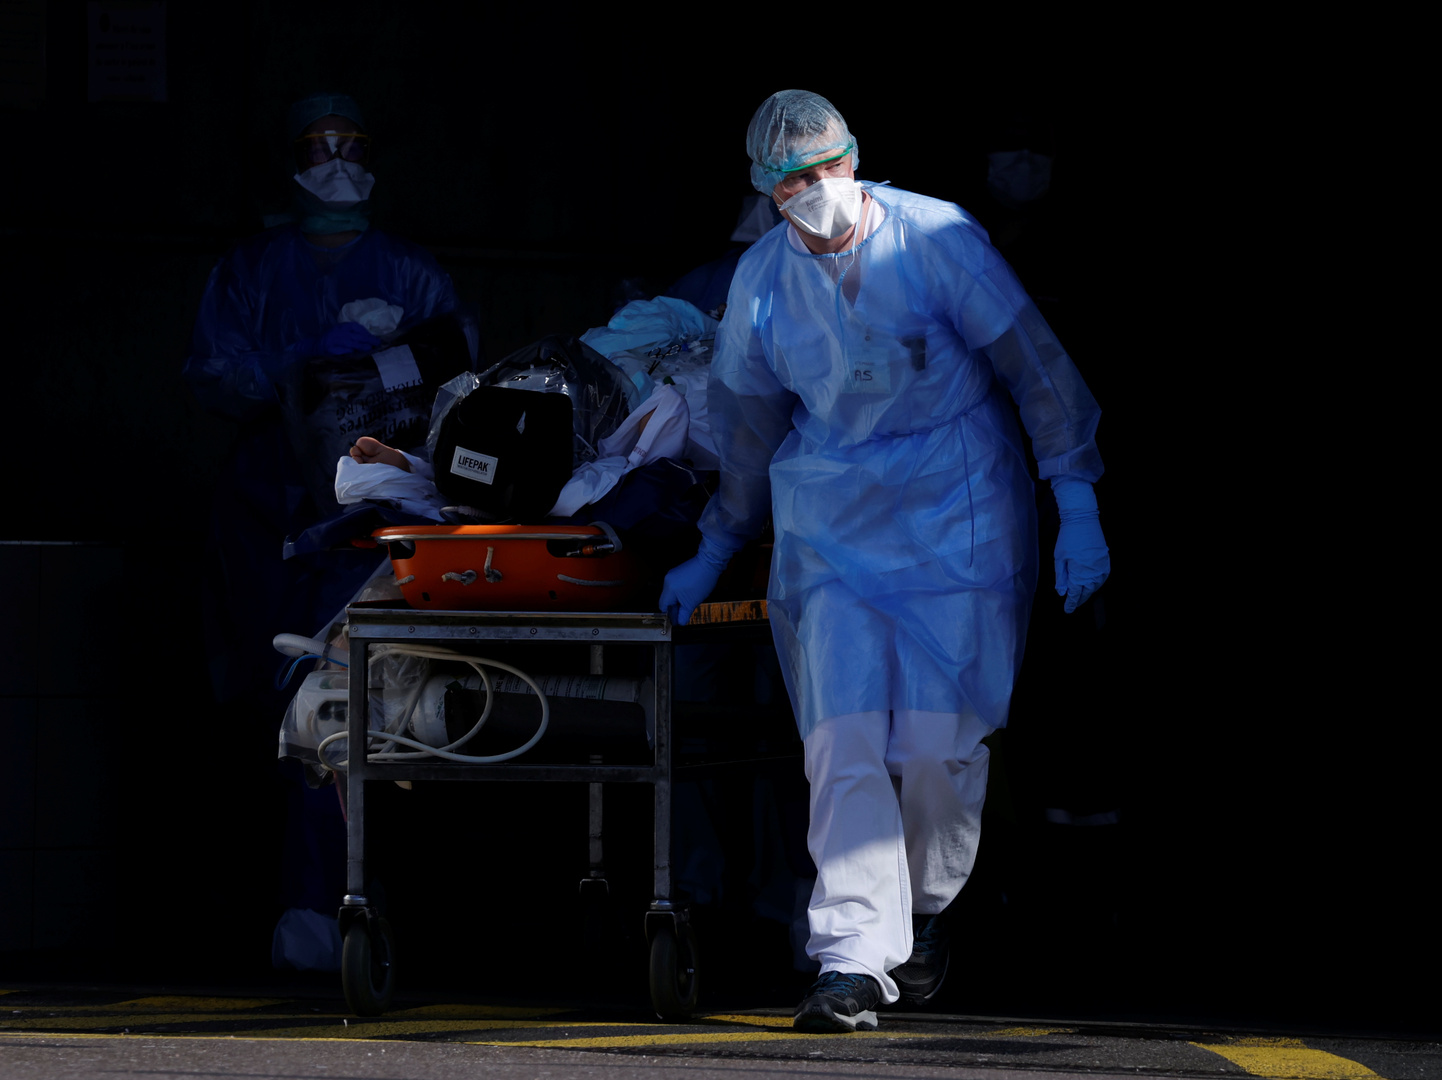 تسجيل 240 وفاة جديدة بفيروس كورونا في فرنسا وعدد الضحايا الكلي 1100